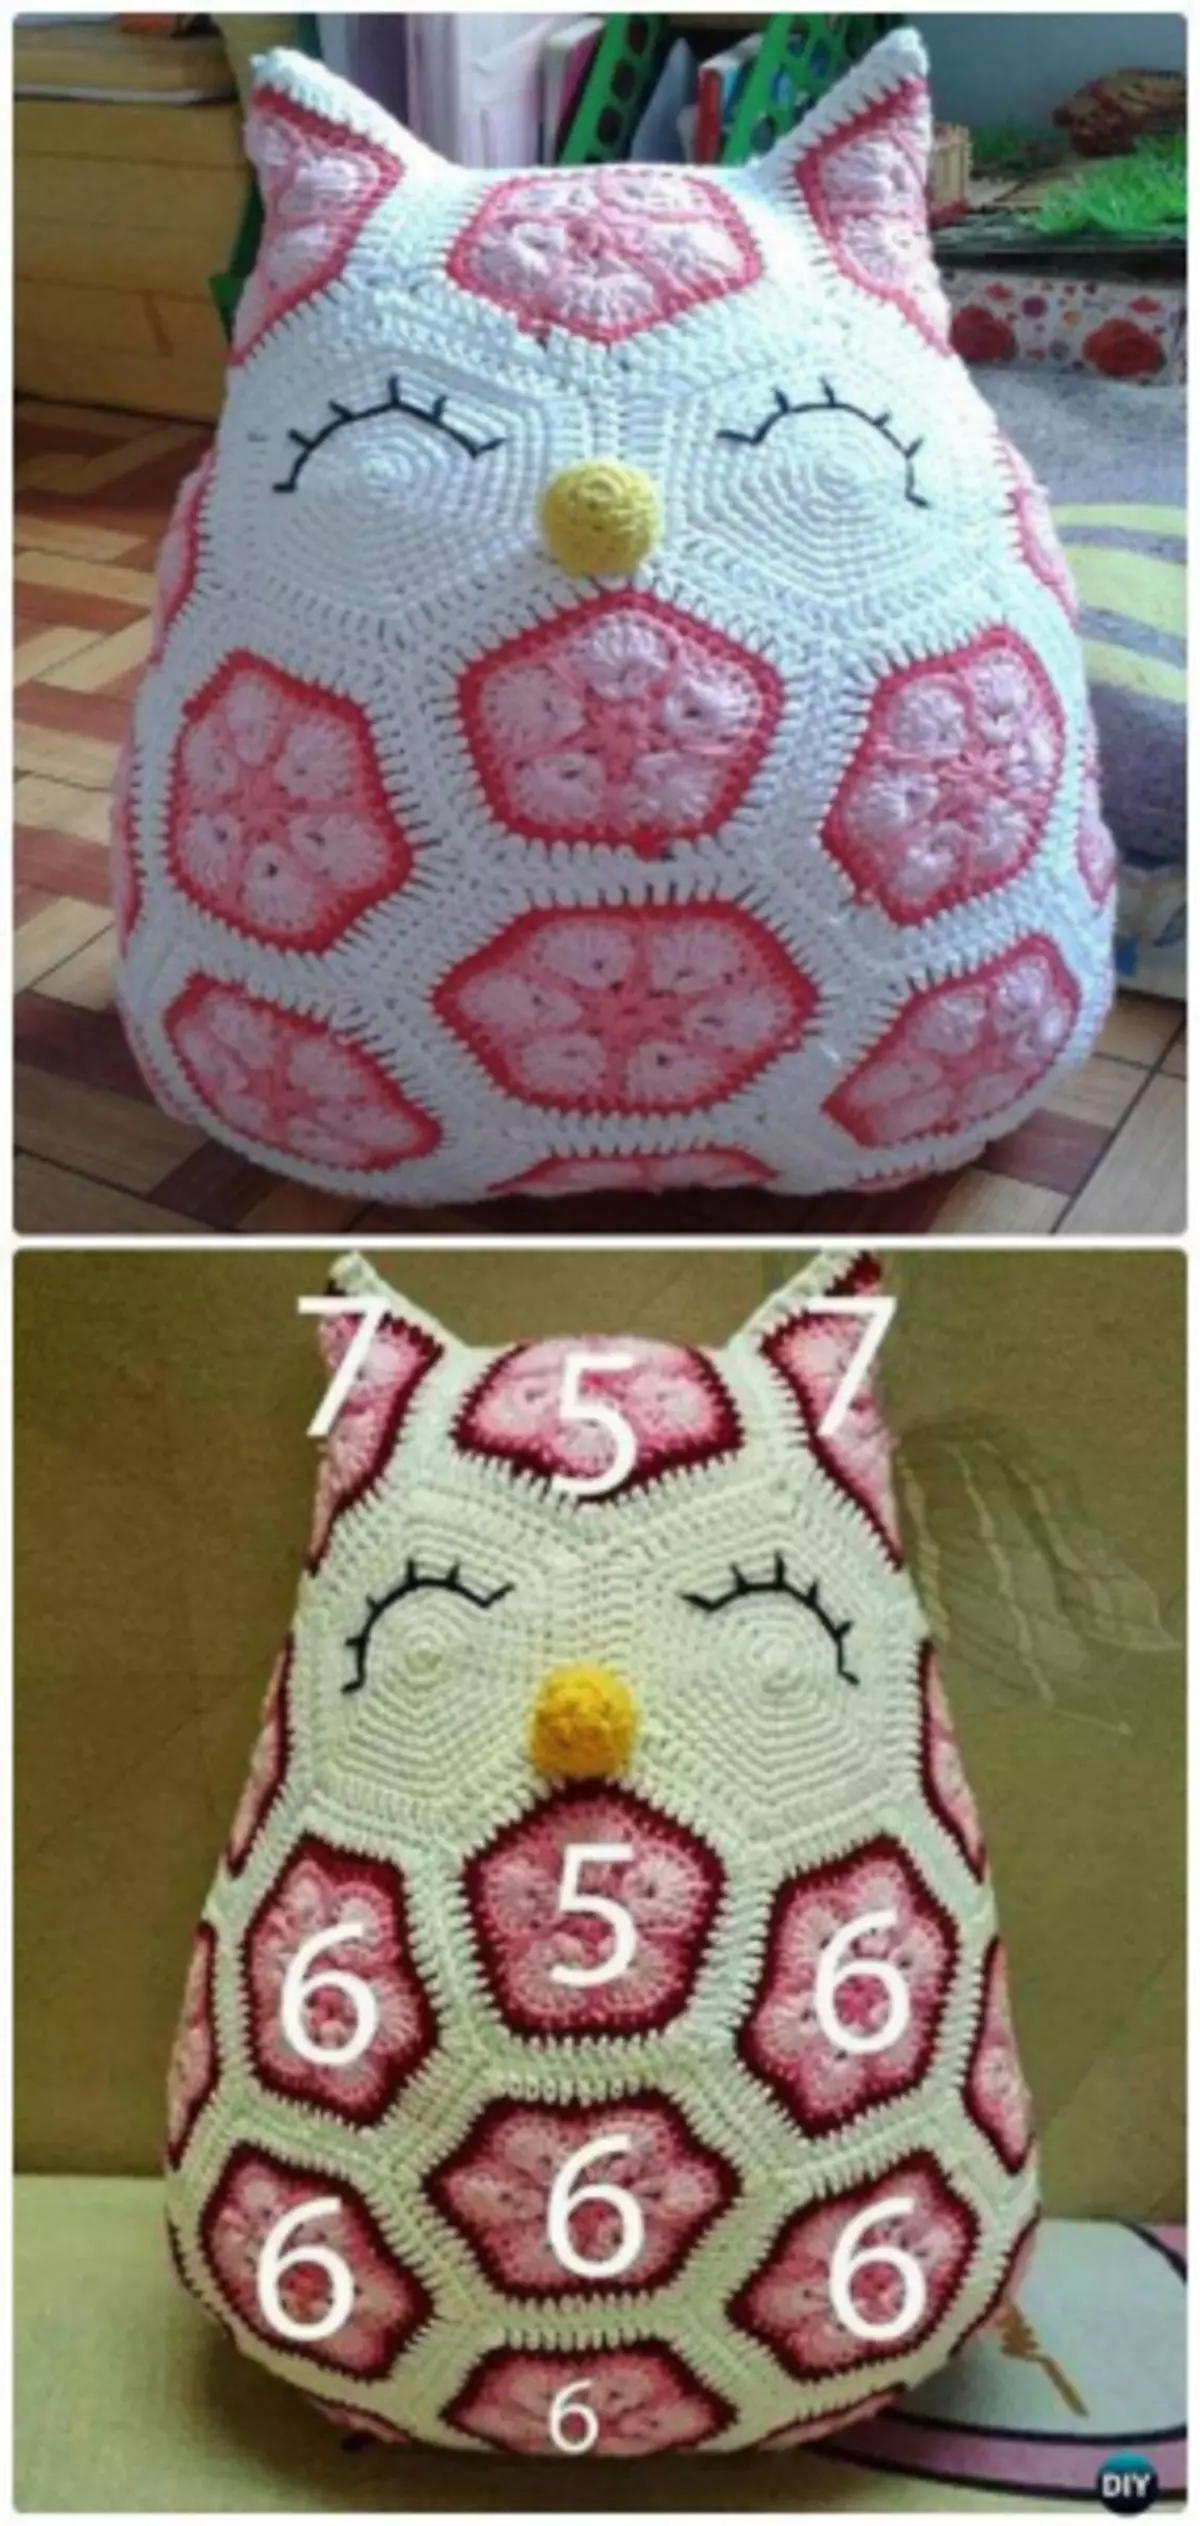 Owl Crochet սխեմայով եւ վարպետության դասի նկարագրությունը